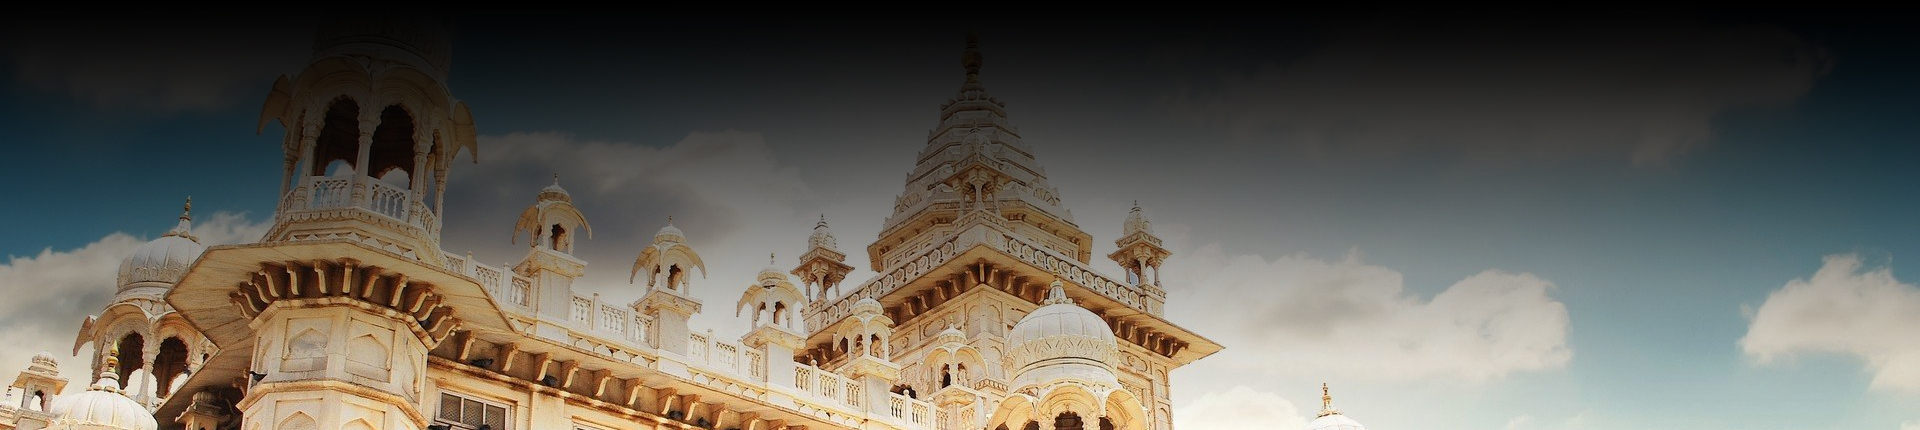 Travel Agencies in Coimbatore | Best Travel Agents in Coimbatore